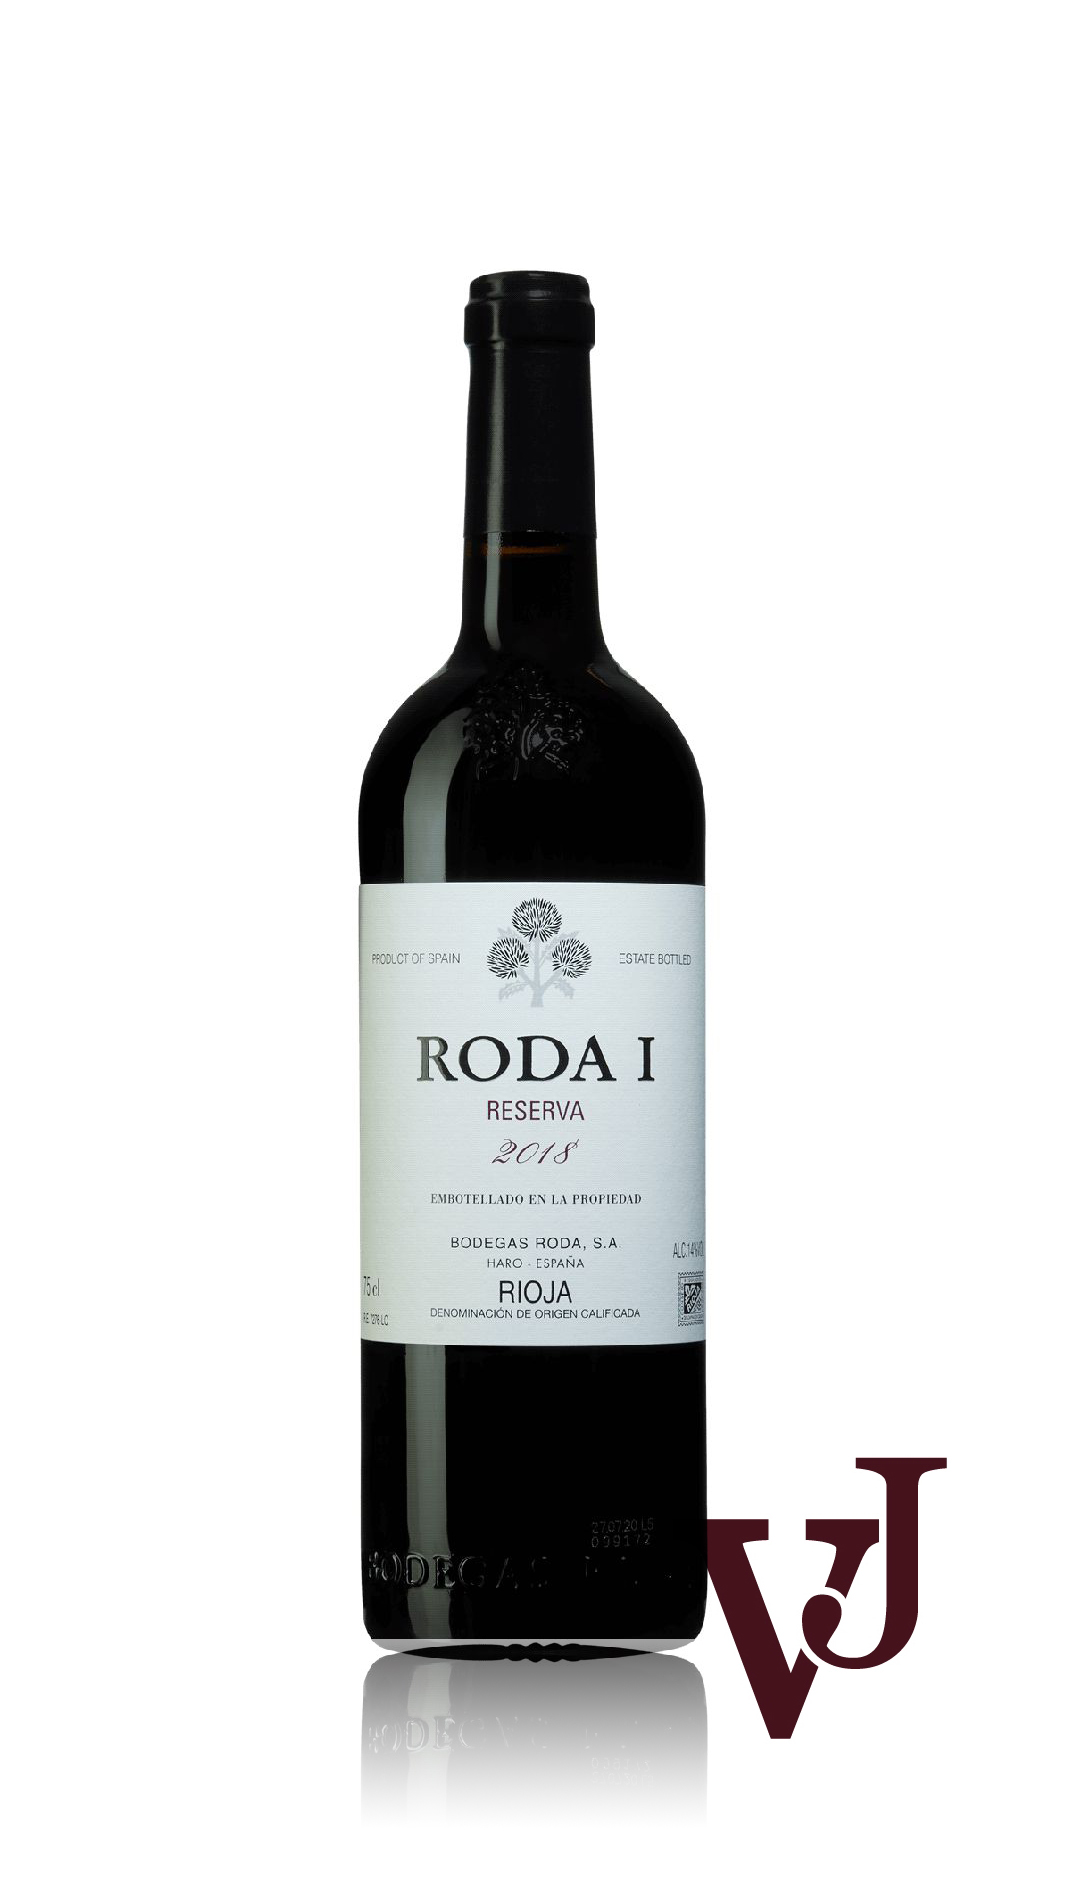 Rött Vin - Roda I artikel nummer 9434201 från producenten Bodegas Roda från Spanien